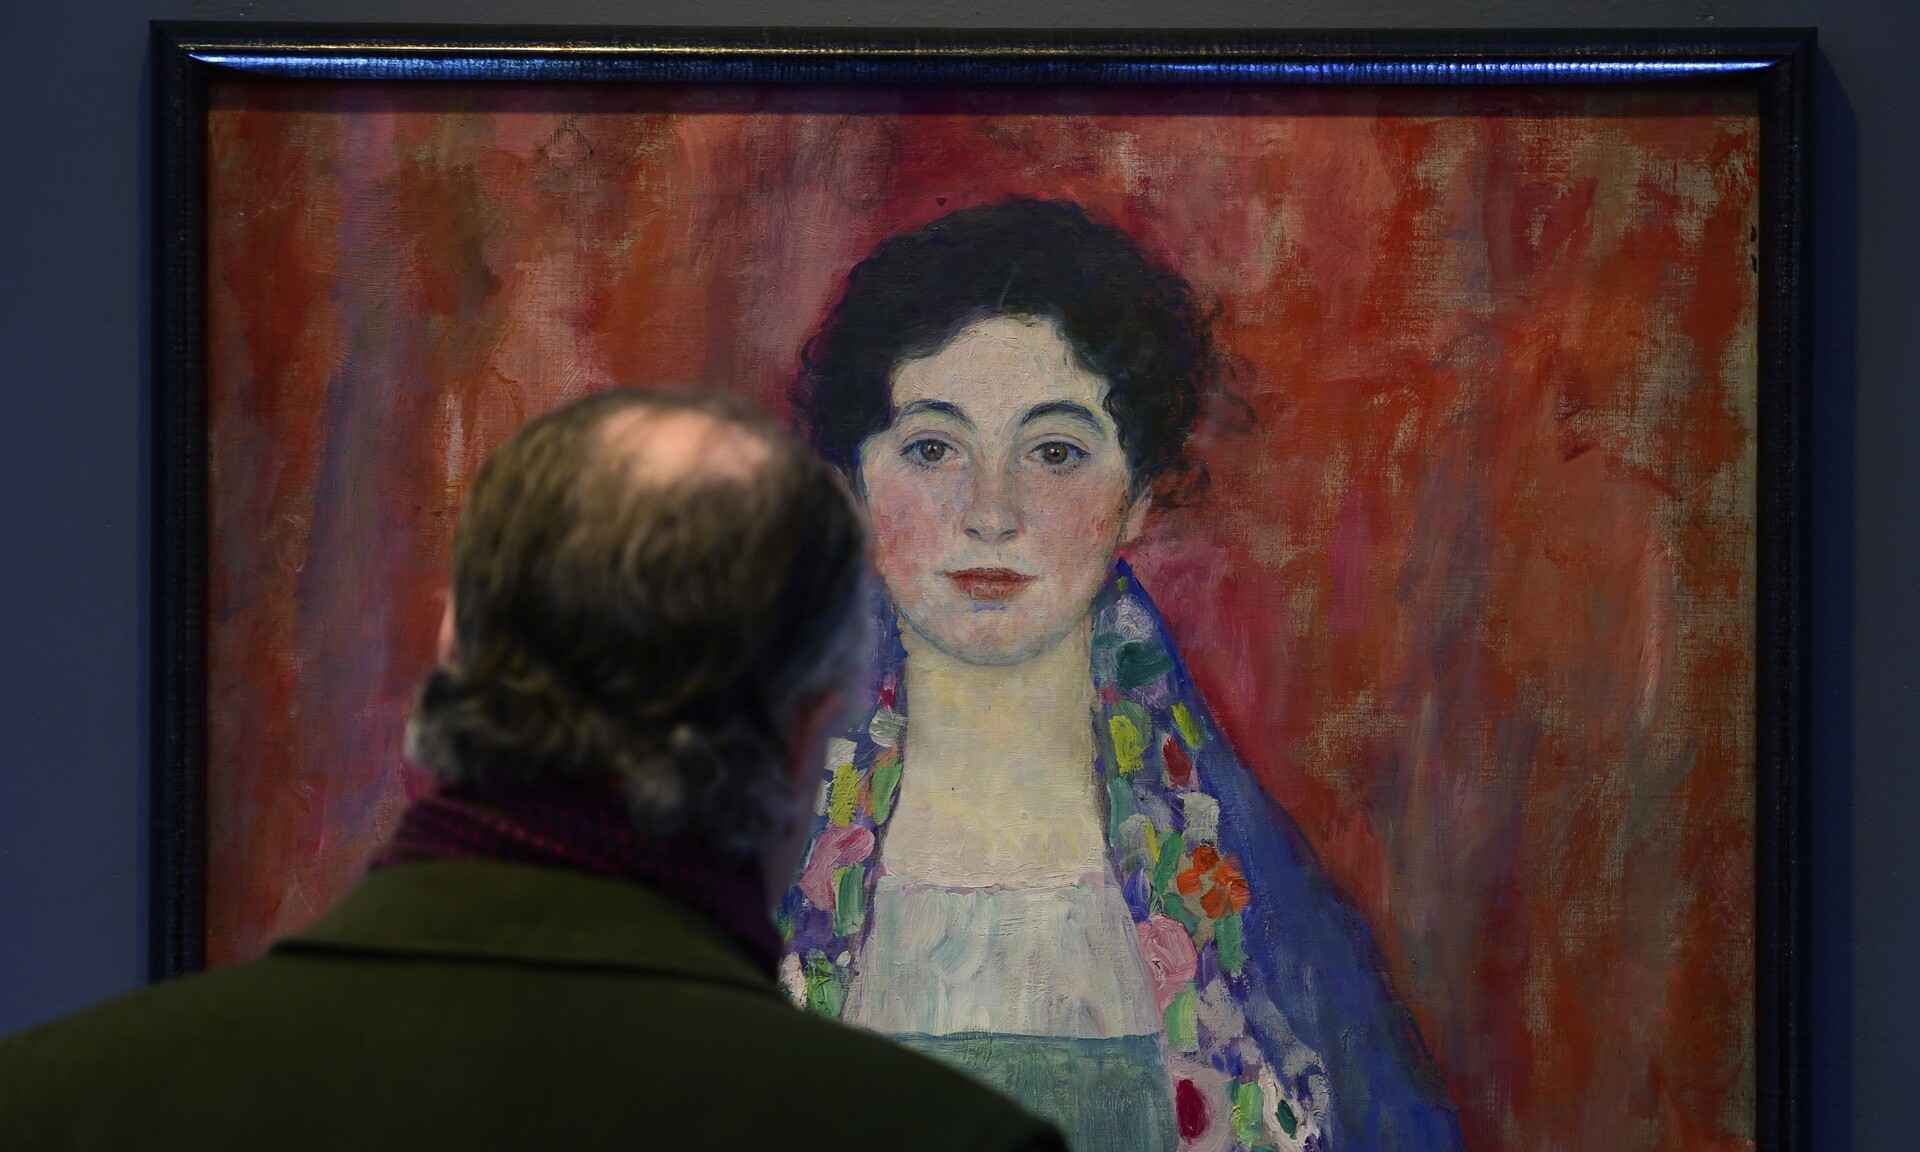 Αυστρία: Πουλήθηκε πίνακας του Γκούσταβ Κλιμτ έναντι 30 εκατ. ευρώ - Αμφίβολη η προέλευσή του